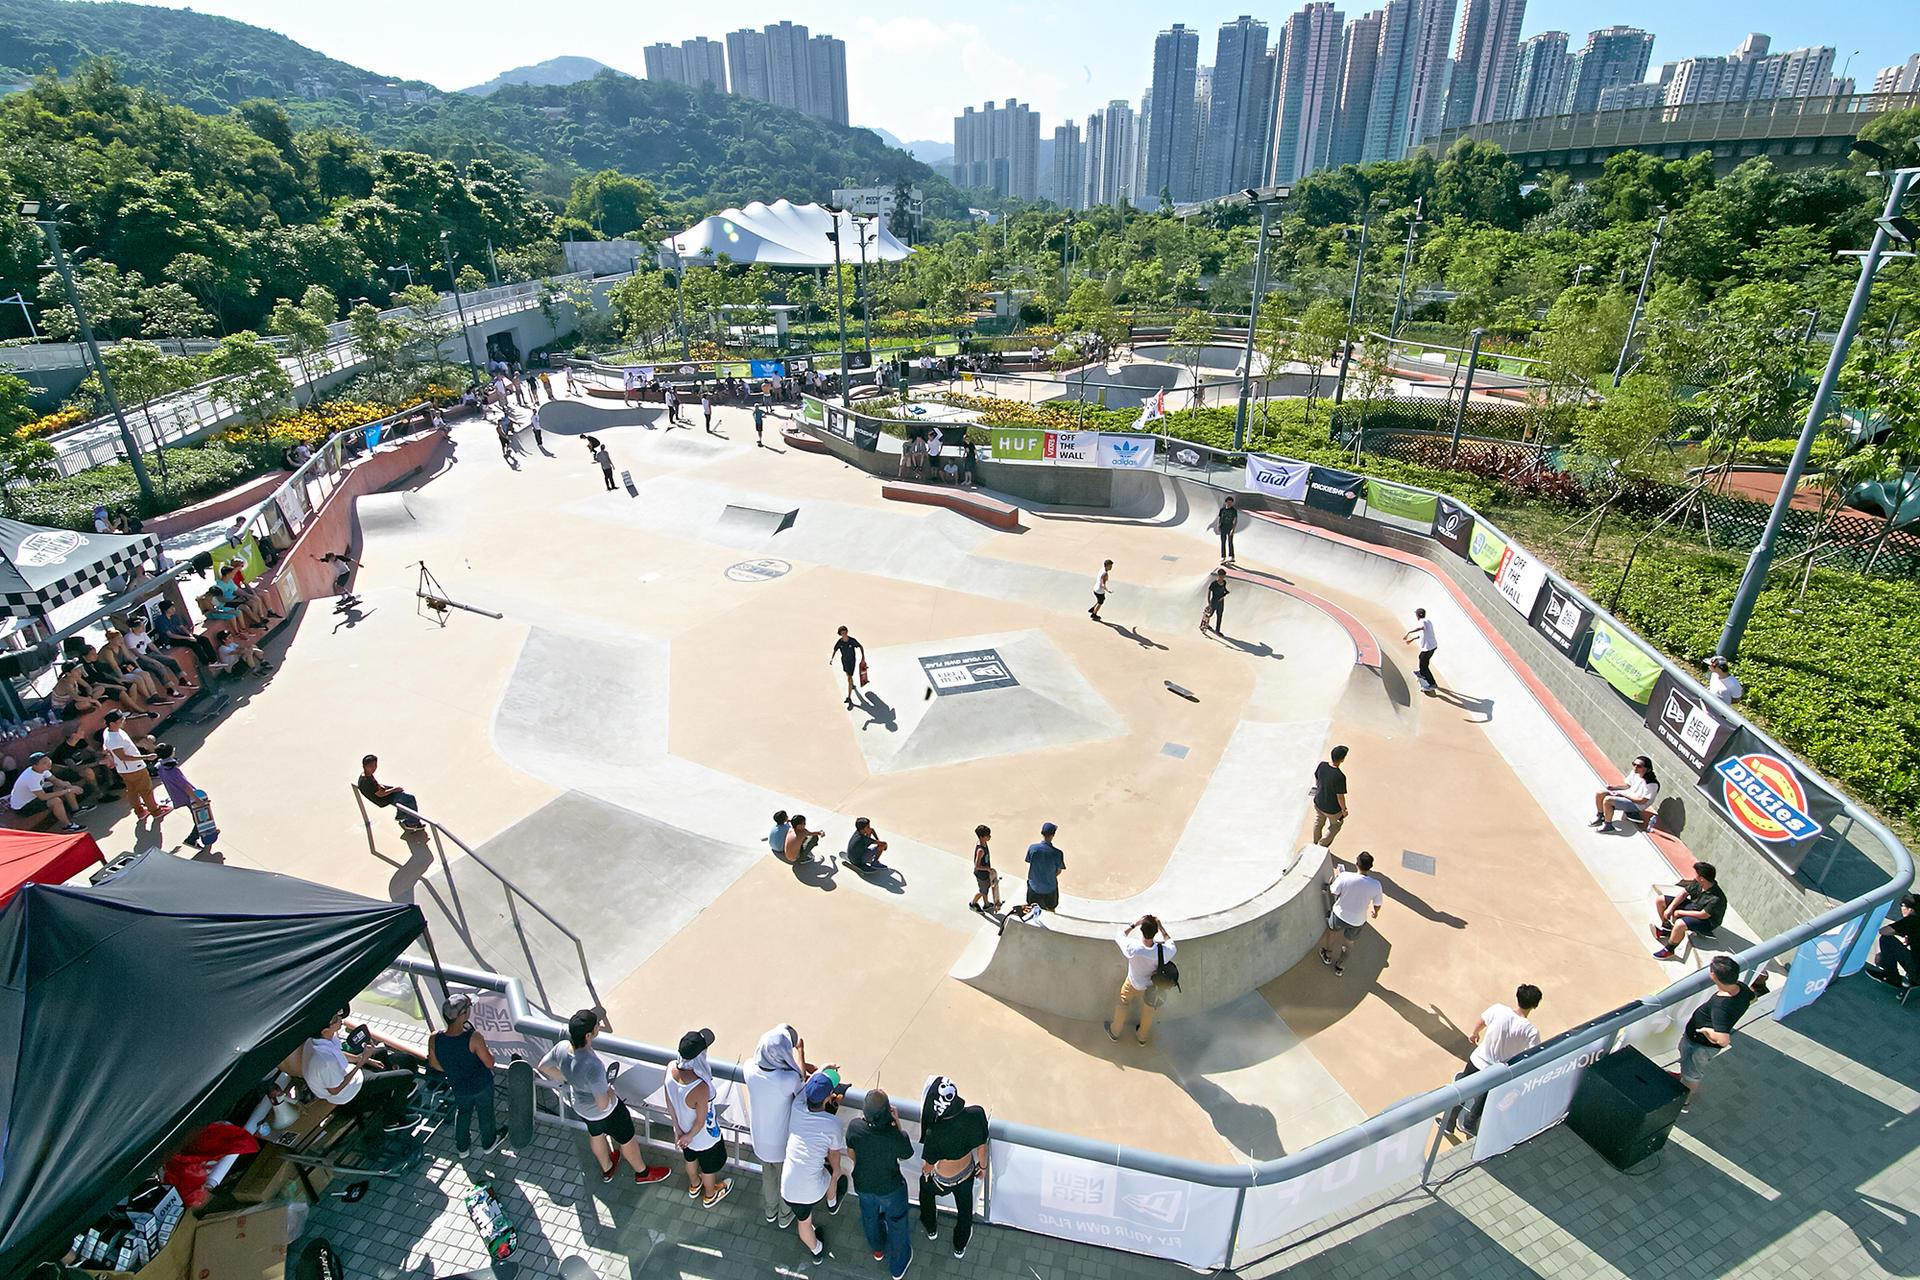 Tseung Kwan O Skatepark. Photo: Ray Leung